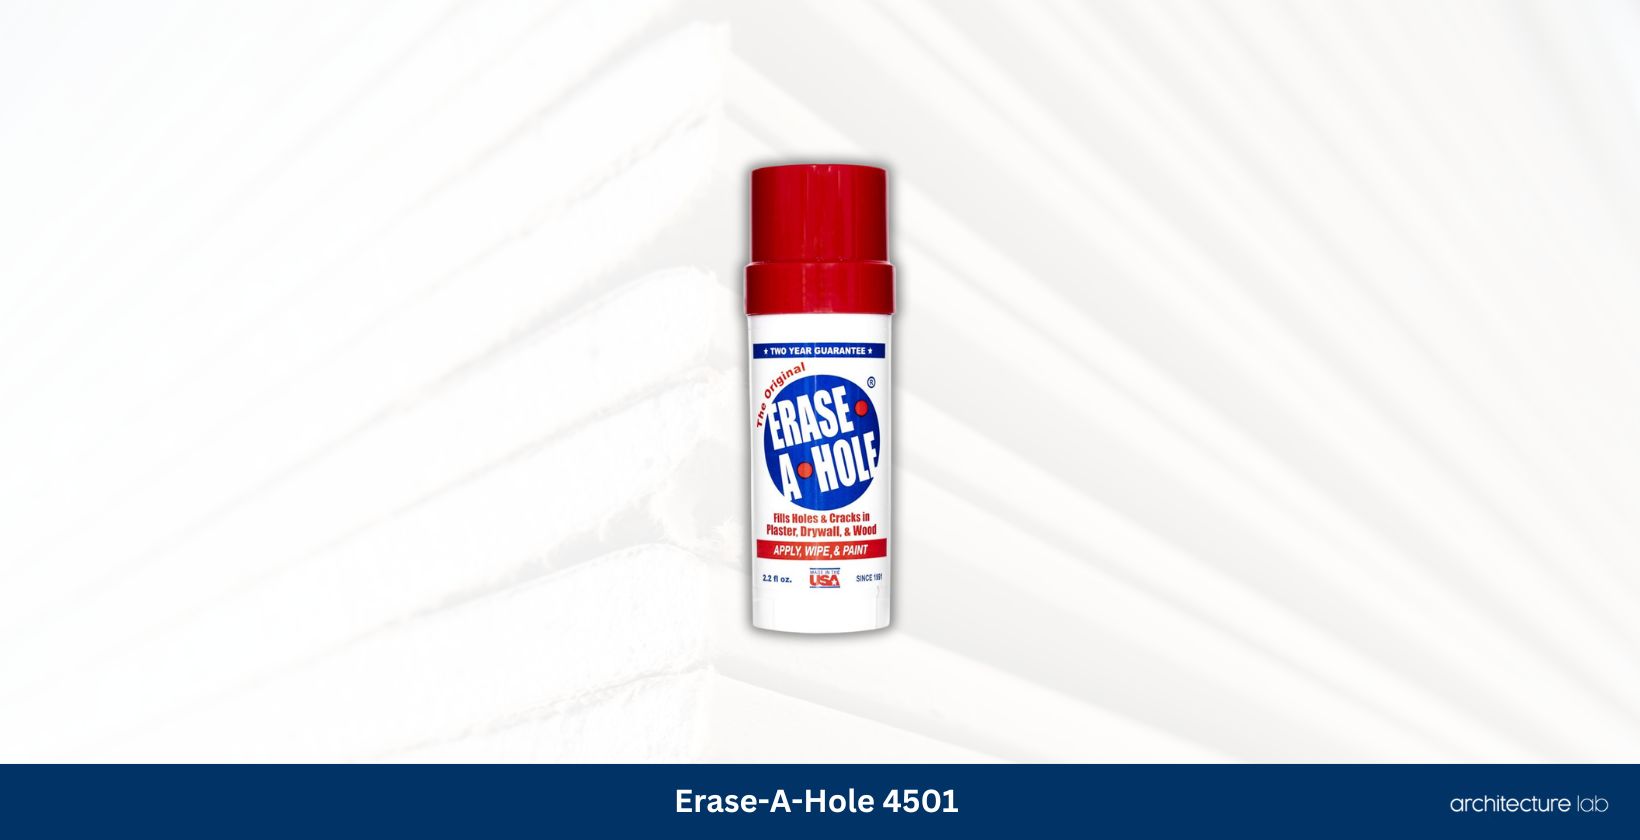 Erase a hole 4501